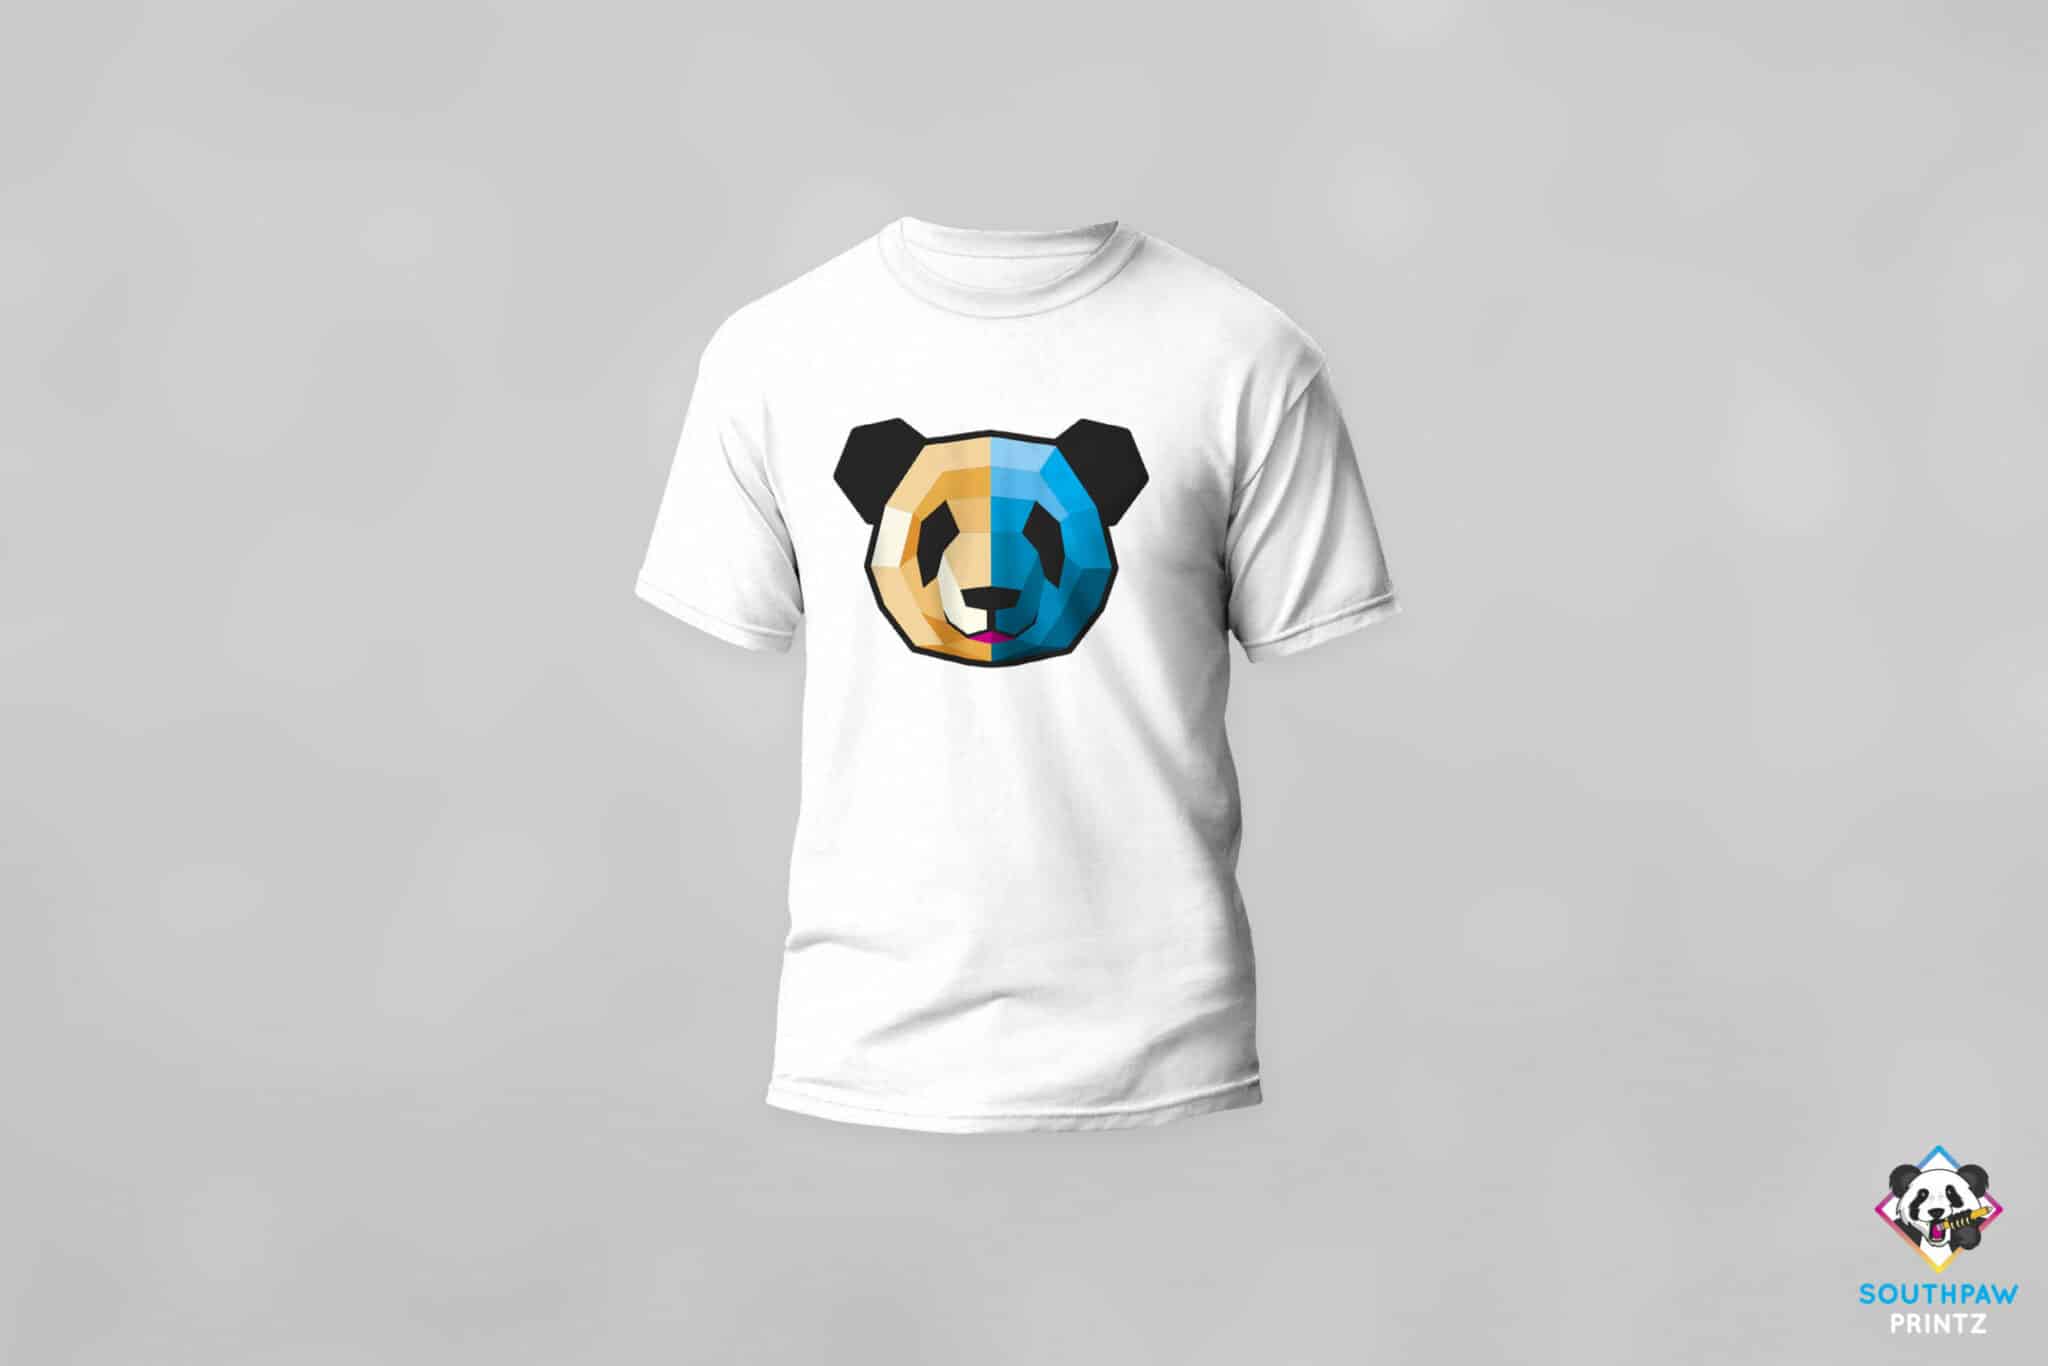 15 Panda Shirt Designs Bundle For Commercial Use Part 3, Panda T-shirt,  Panda png file, Panda digital file, Panda gift, Panda download, Panda  design - Buy t-shirt designs